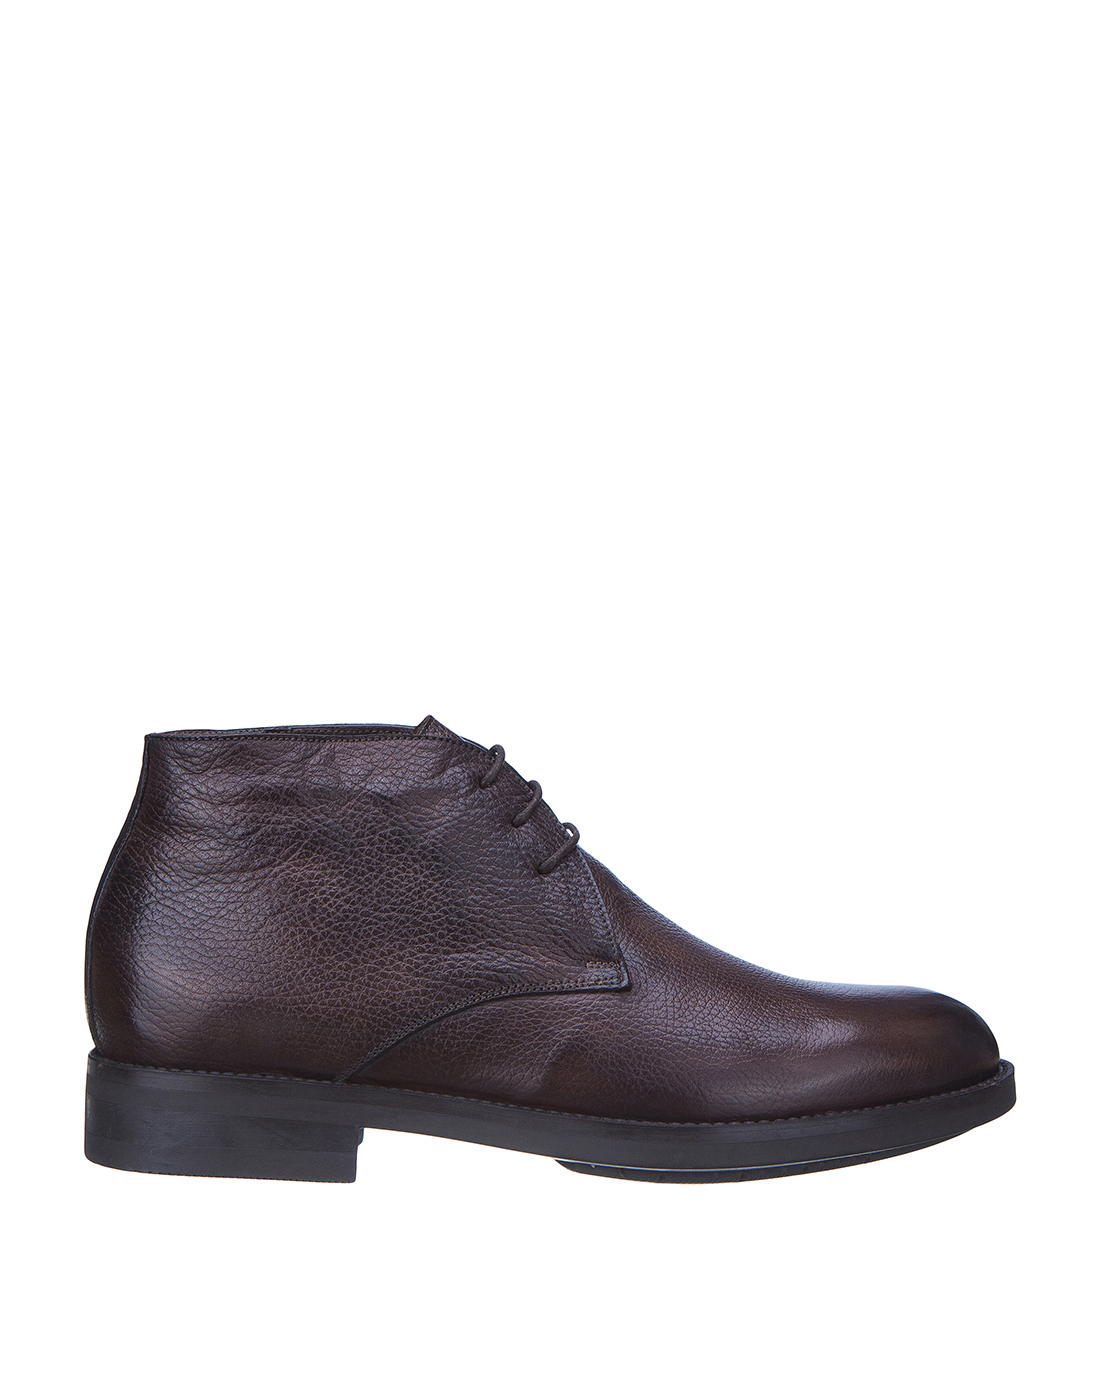 Туфли коричневые мужские Brecos S9138-1